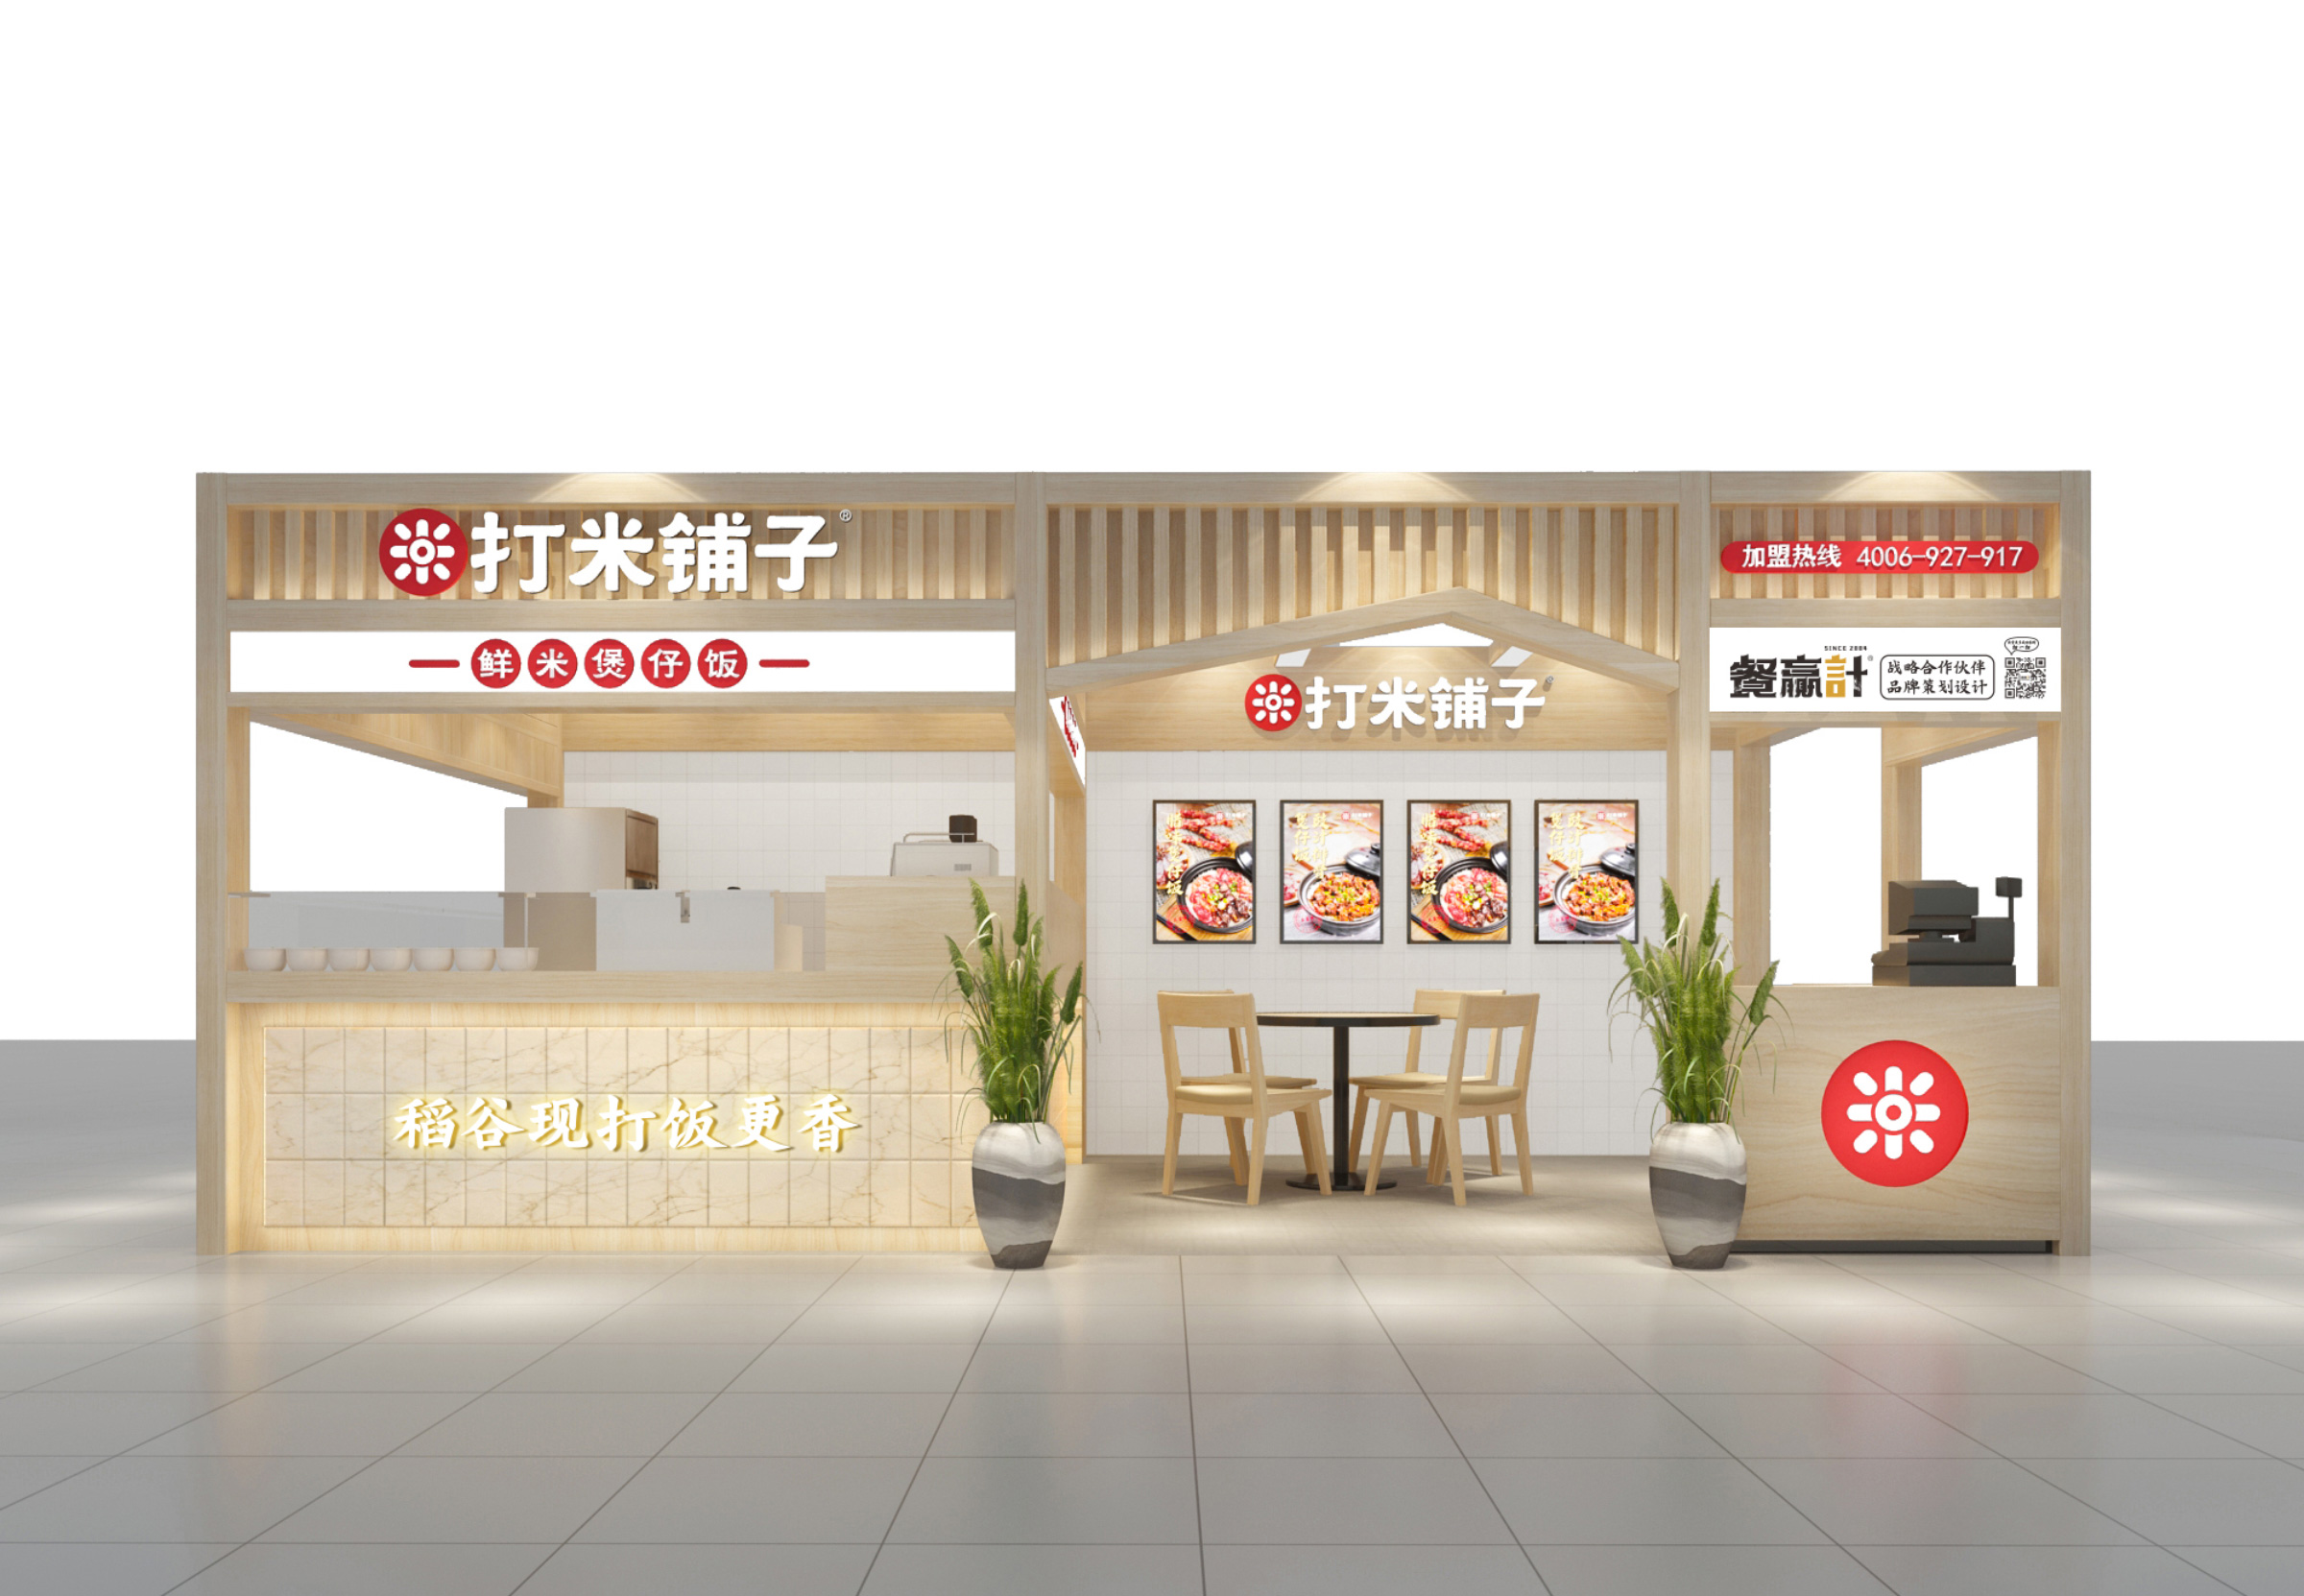 惠州煲仔饭餐饮品牌店面招牌设计